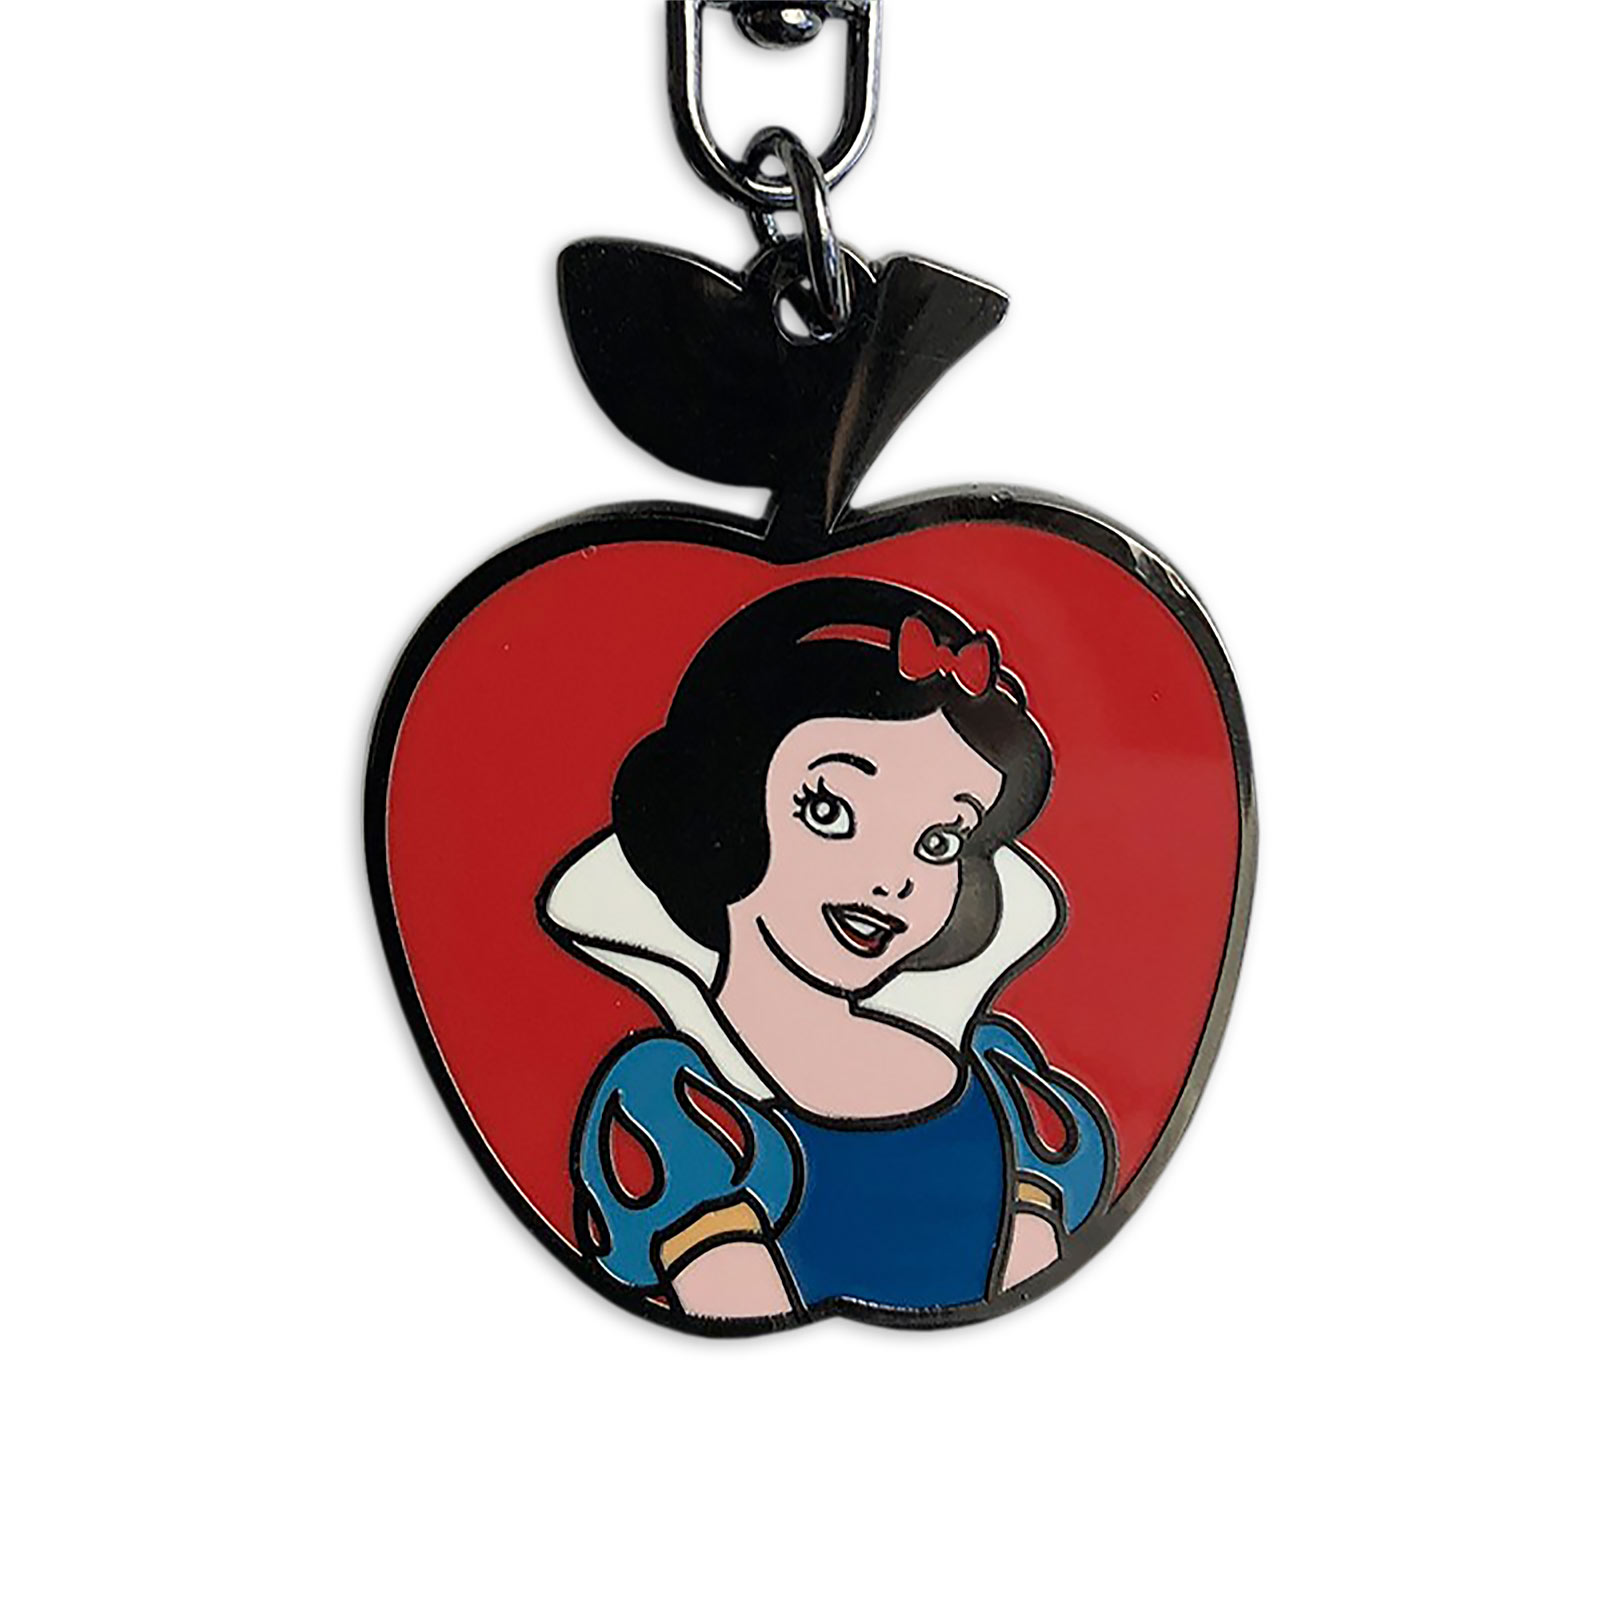 Snow White - Portrait Keychain